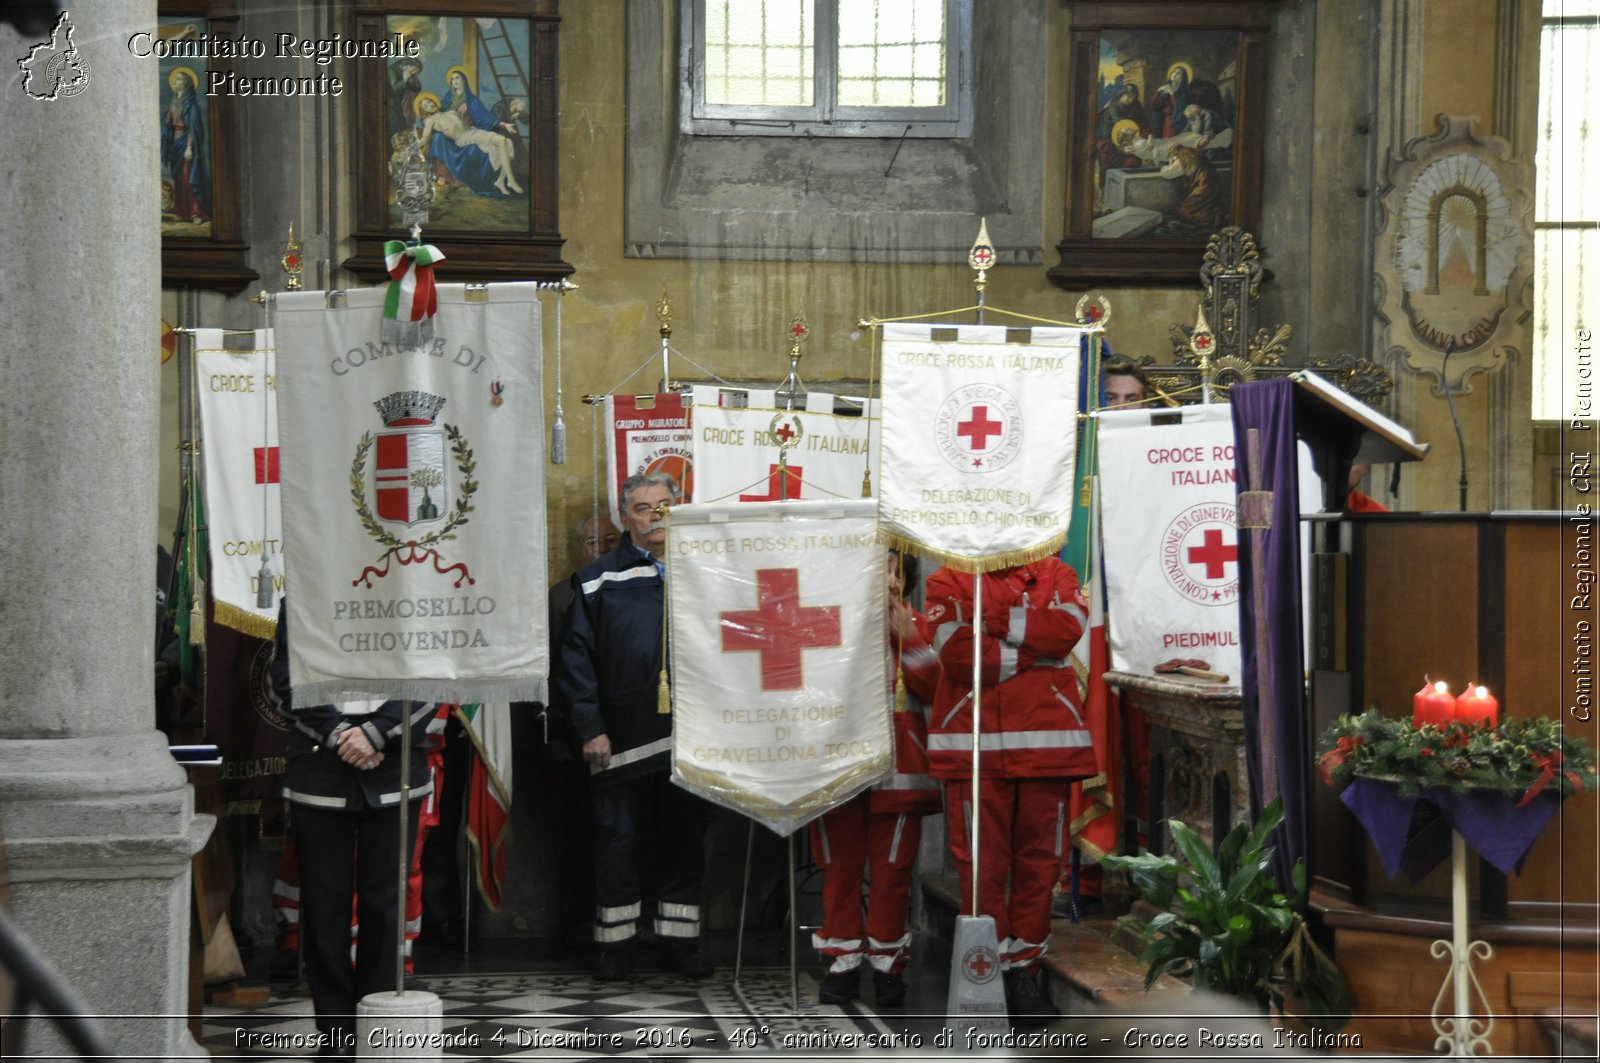 Premosello Chiovenda 4 Dicembre 2016 - 40 anniversario di fondazione - Croce Rossa Italiana- Comitato Regionale del Piemonte